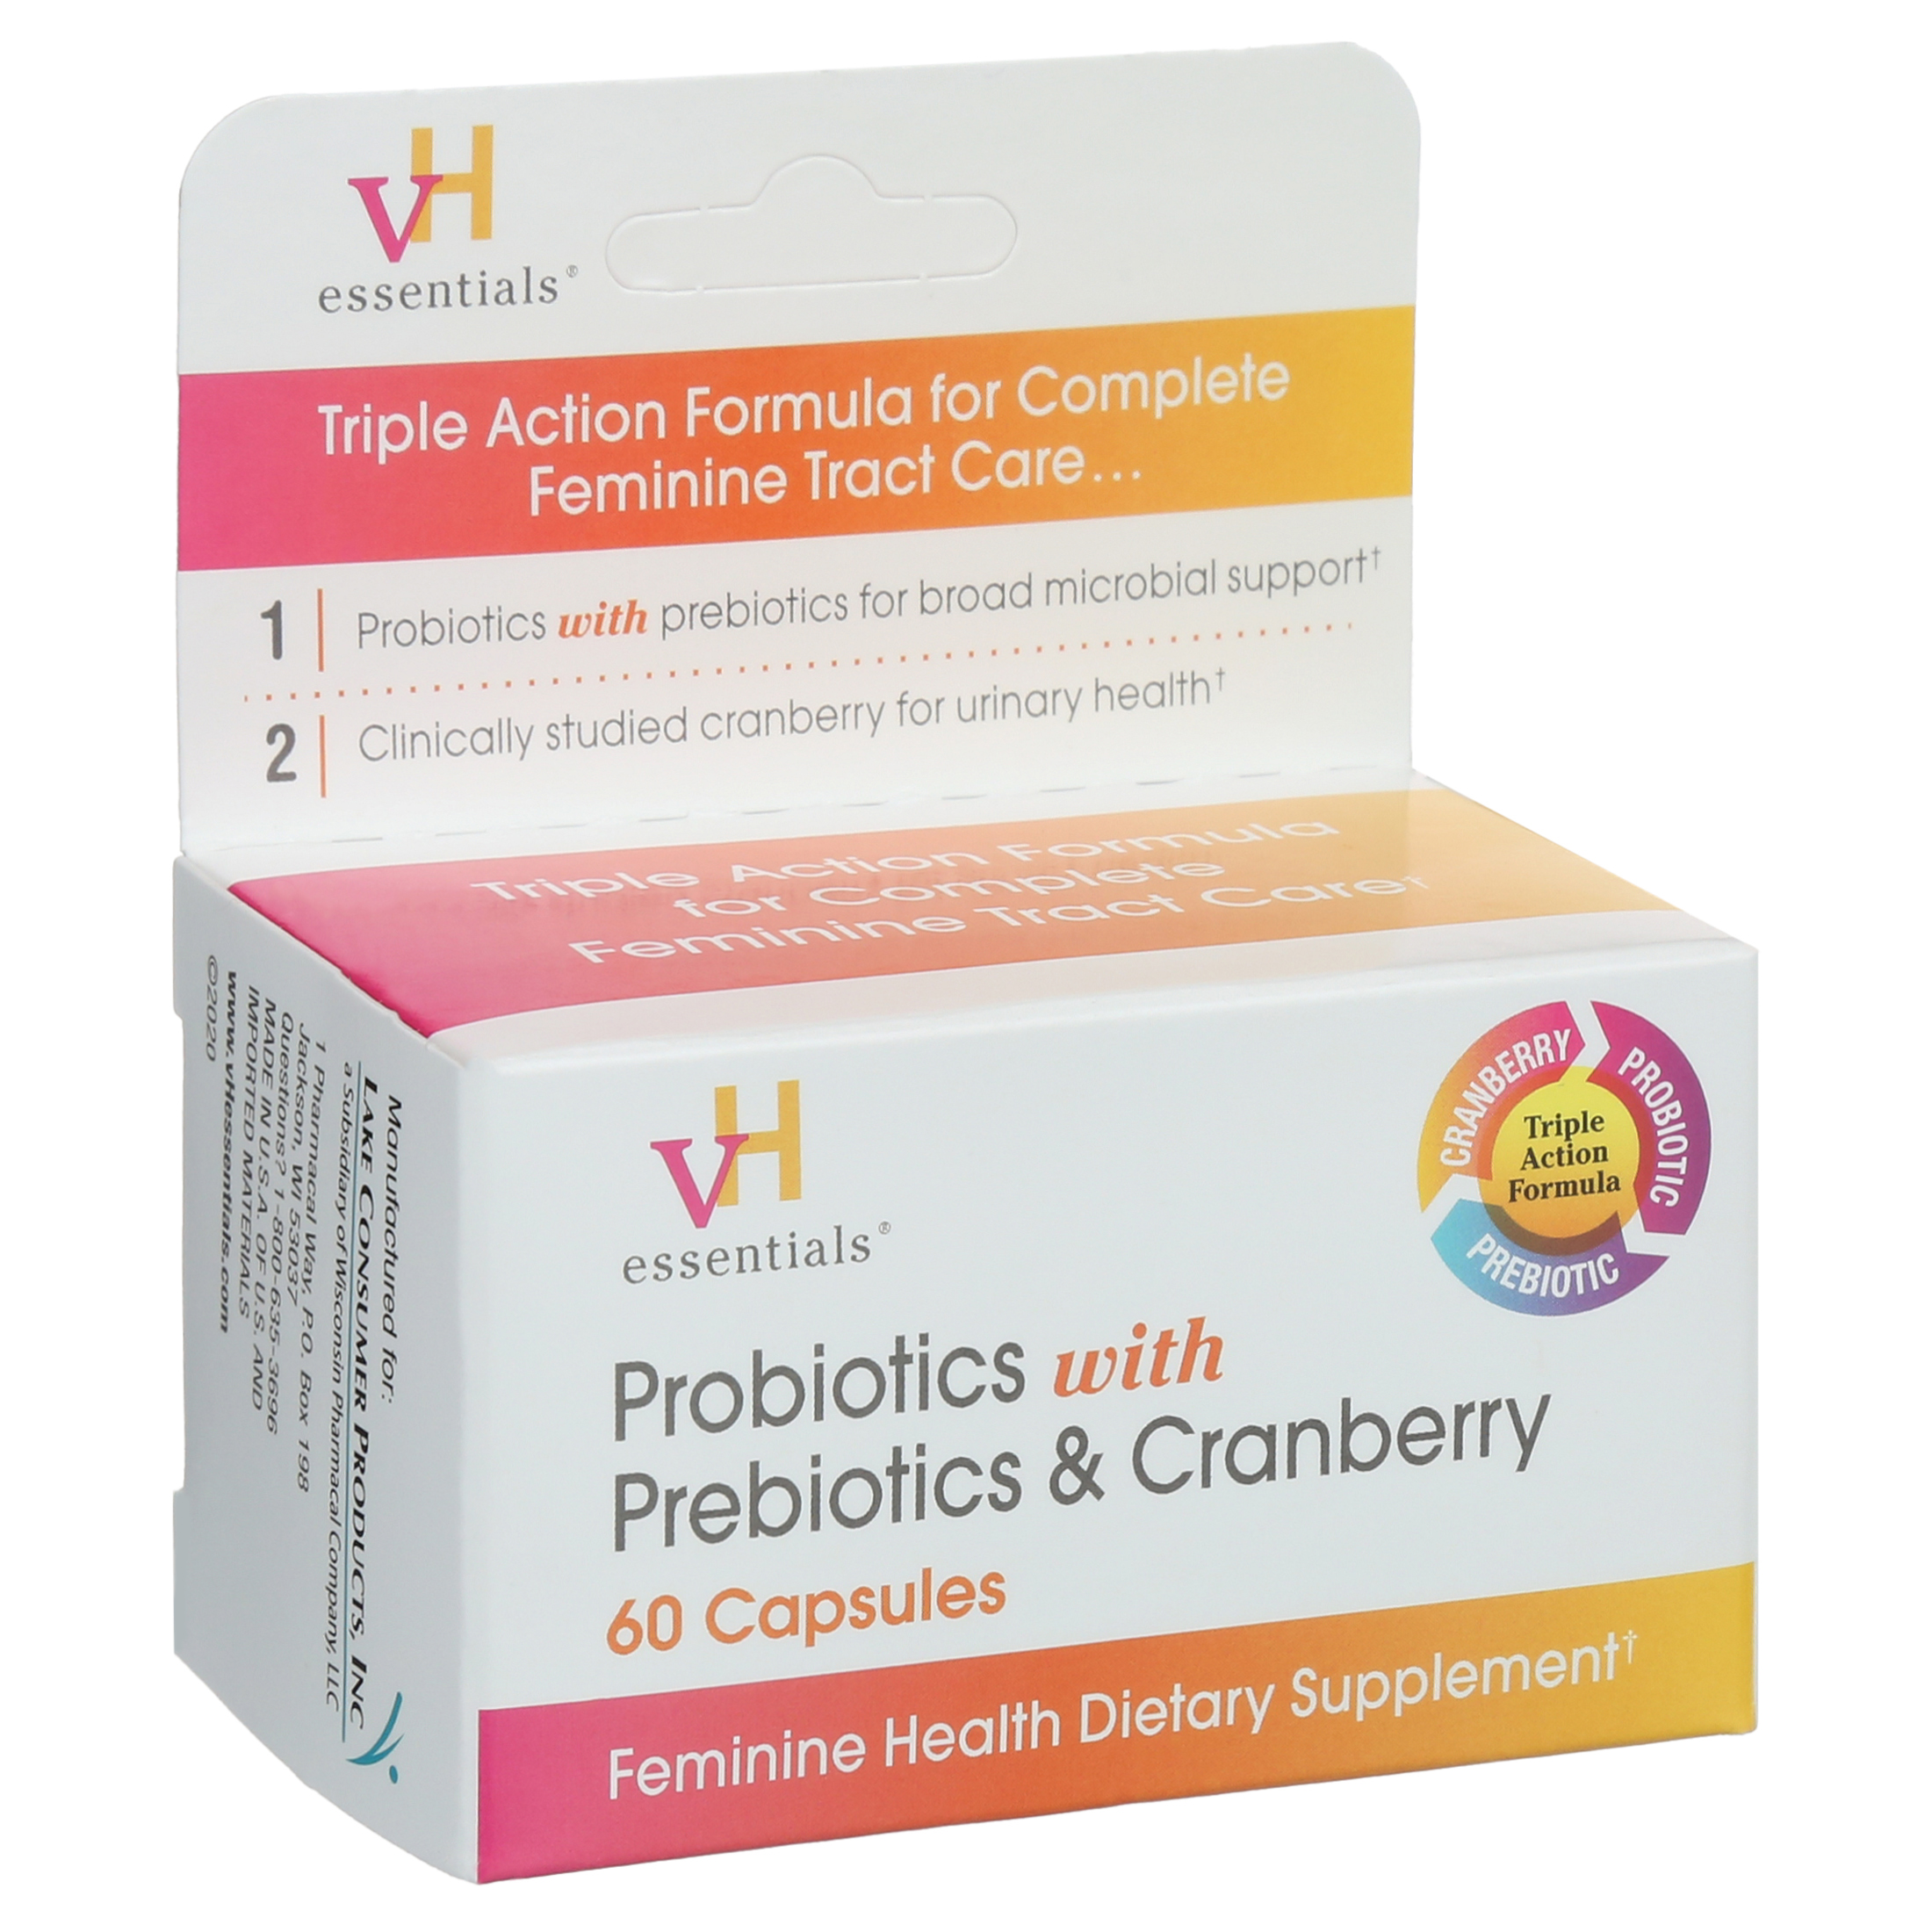 vH essentials Probiotics with Prebiotics and Cranberry Feminine Health Supplement - 60 Capsules - image 3 of 9